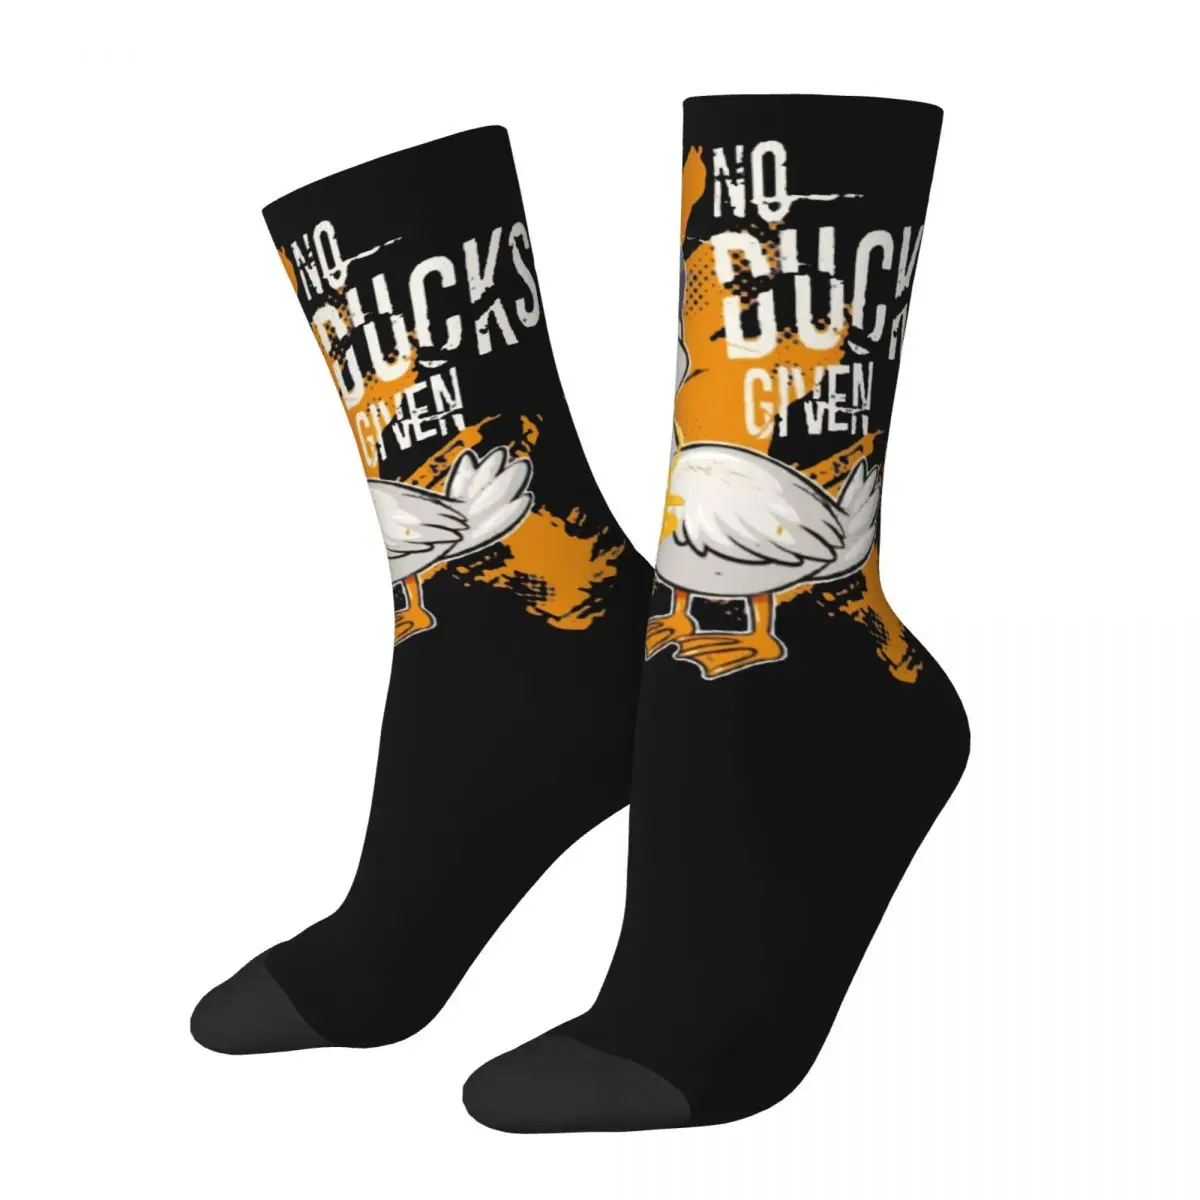 Funny Crazy Sock for Men Ducks Given Hip Hop Vintage Meme Design Happy Quality Pattern Printed Boys Crew Sock Novelty Gift